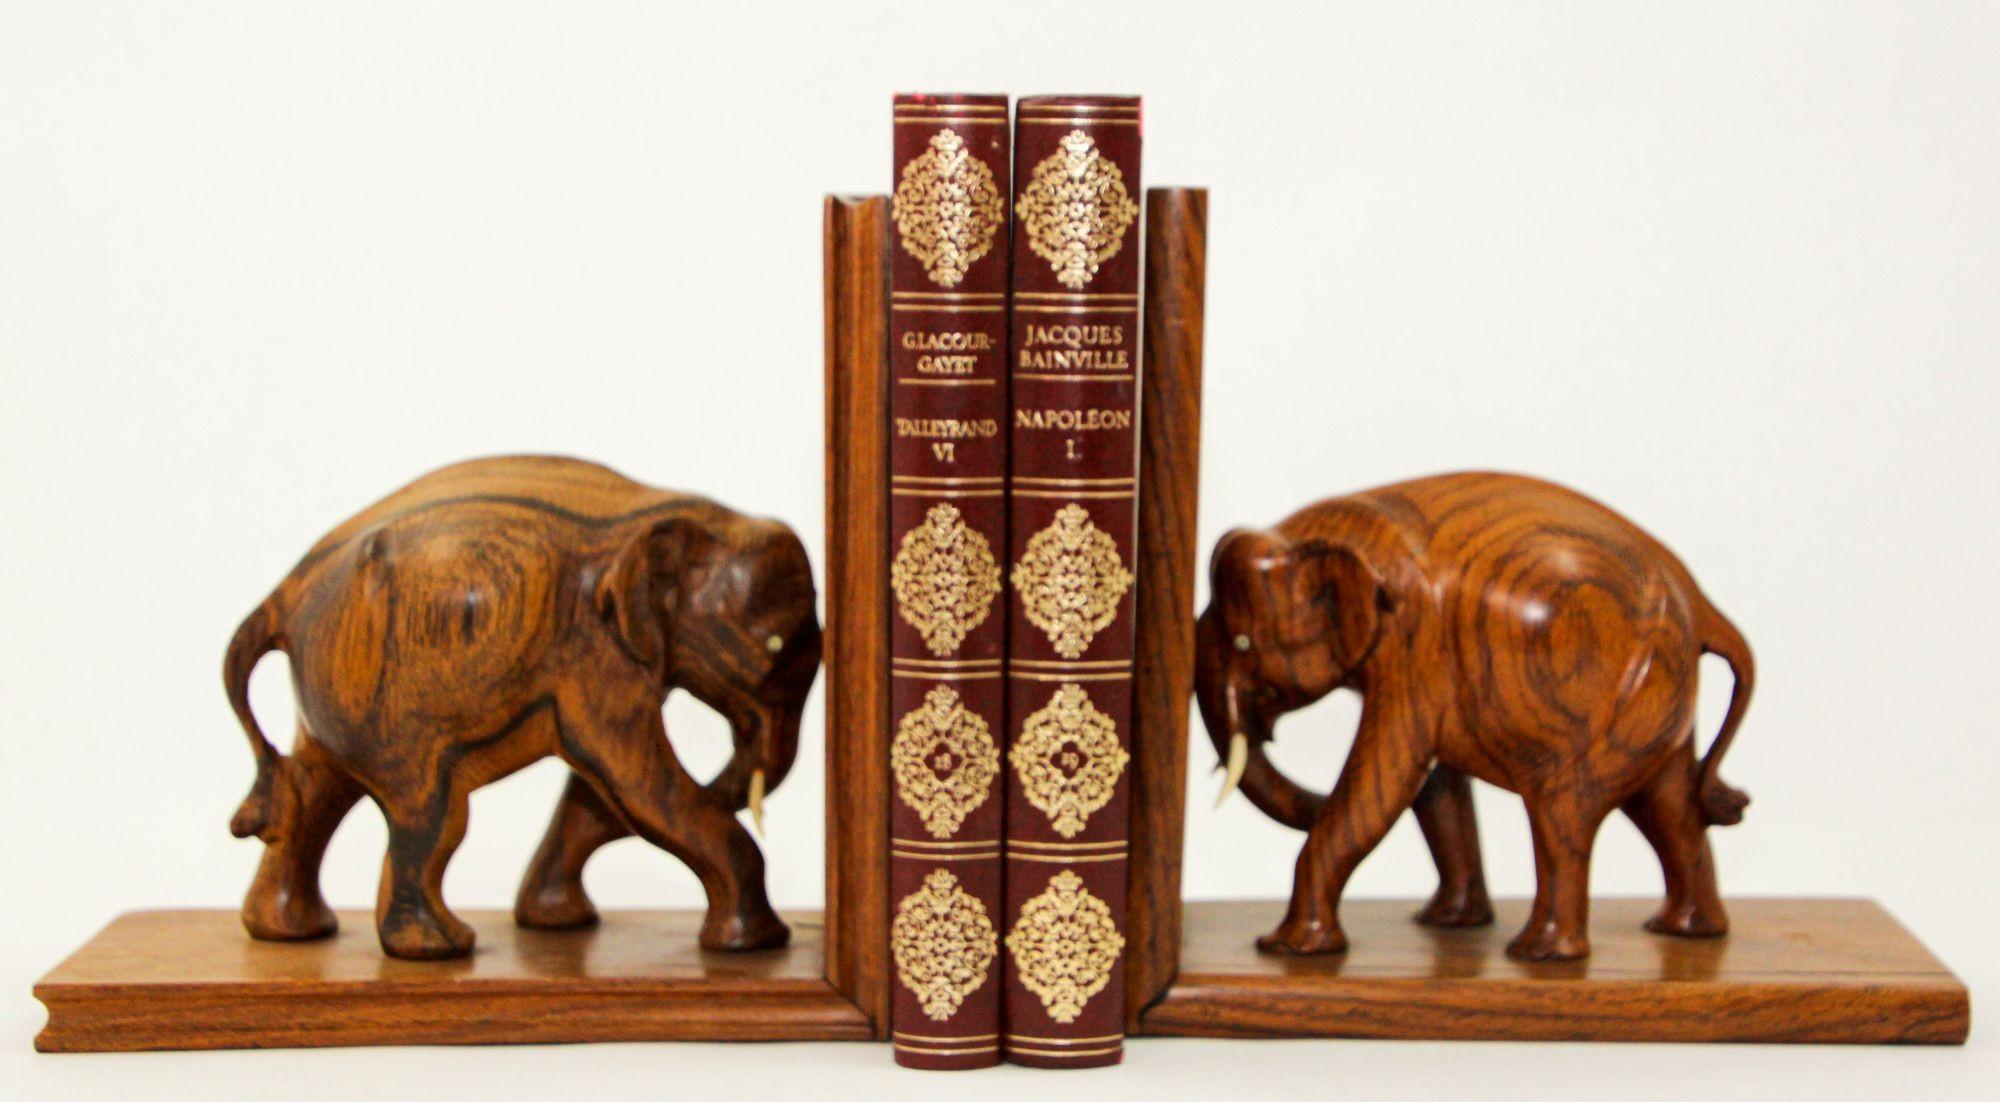 Grand serre-livres vintage en bois d'éléphant asiatique sculpté à la main.
Vintage 1940s serre-livres en bois avec sculptures éléphants sculptés.
Paire de serre-livres éléphants en bois sculptés à la main, de style Art déco français, d'une qualité